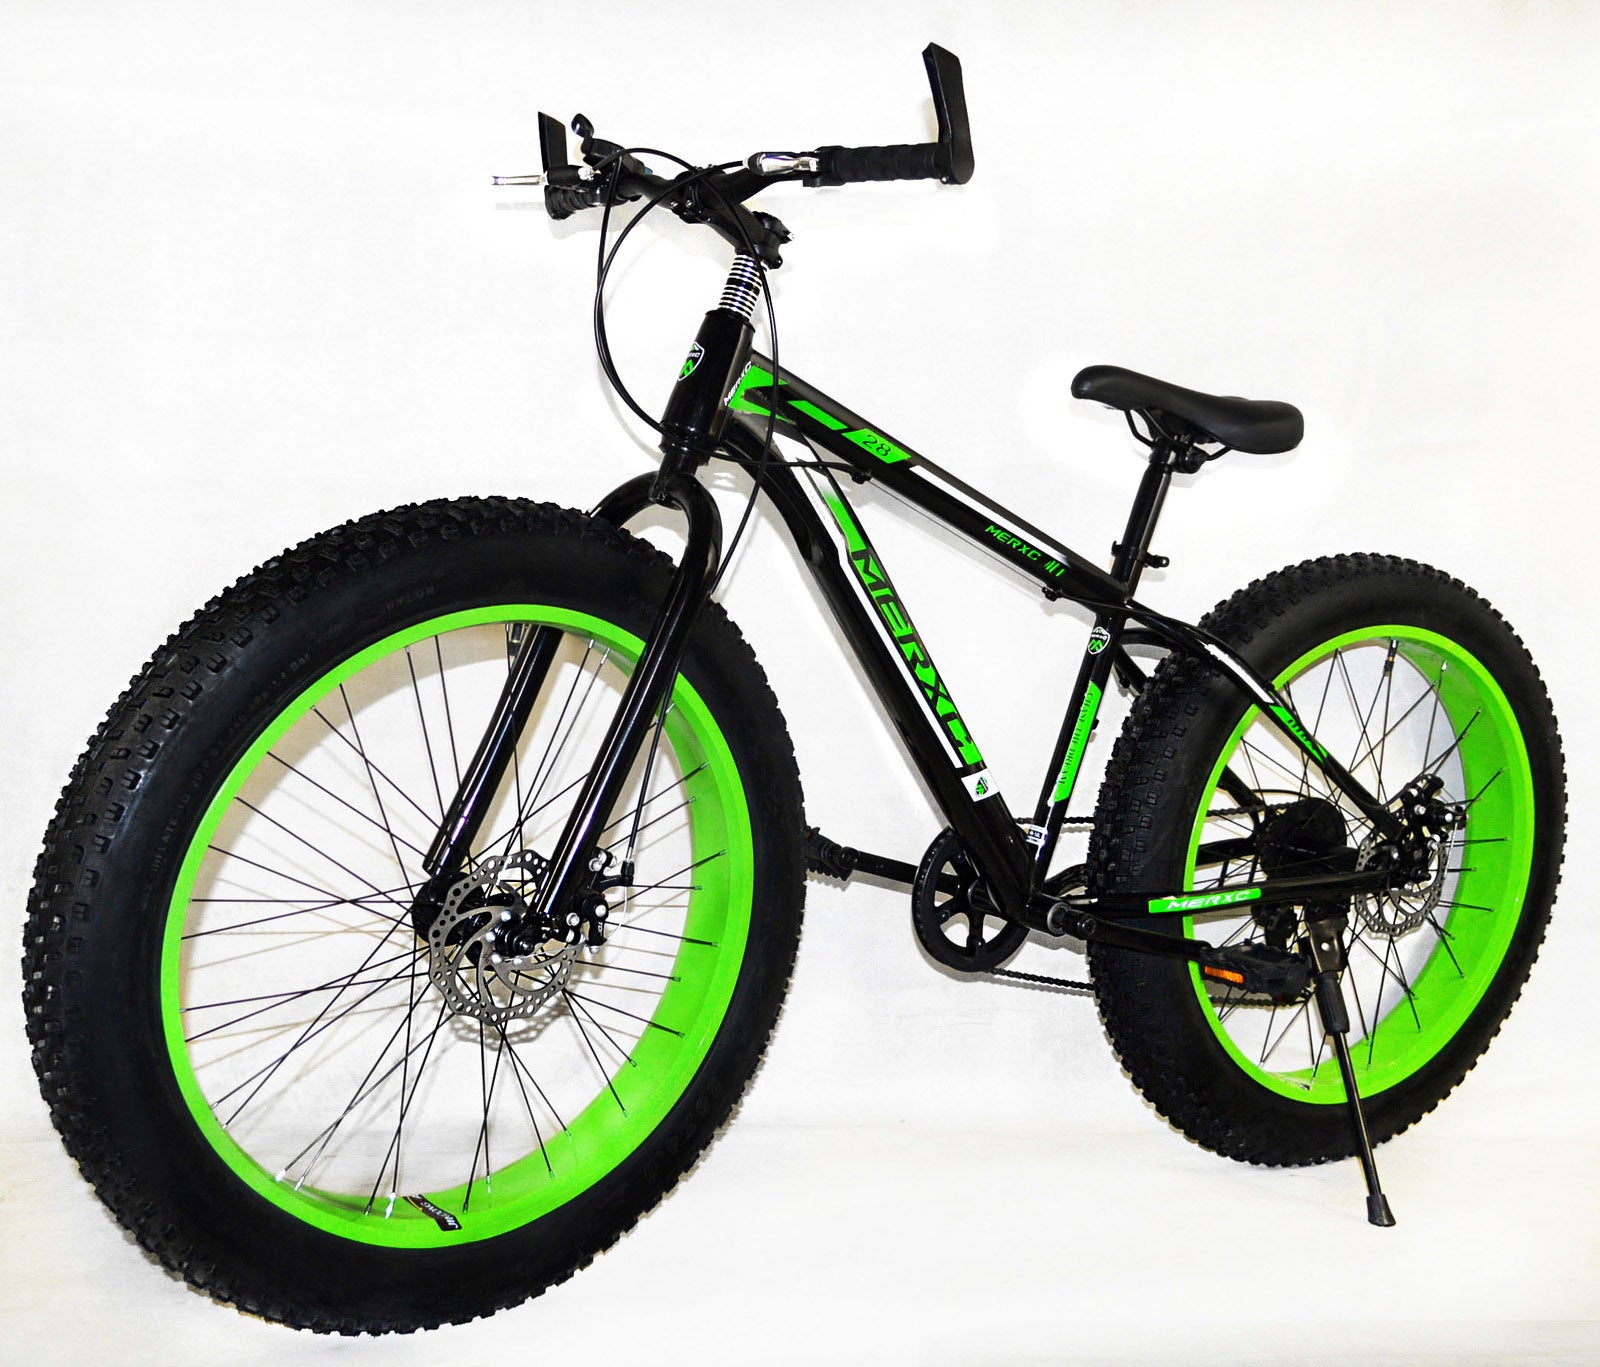 Large Tire Heavy Duty Fat Wheel Mountain Bike (Premium Green & Black B - 1 280a31e0 5a51 4101 8a32 7e83cac92eaD 1024x1024@2x